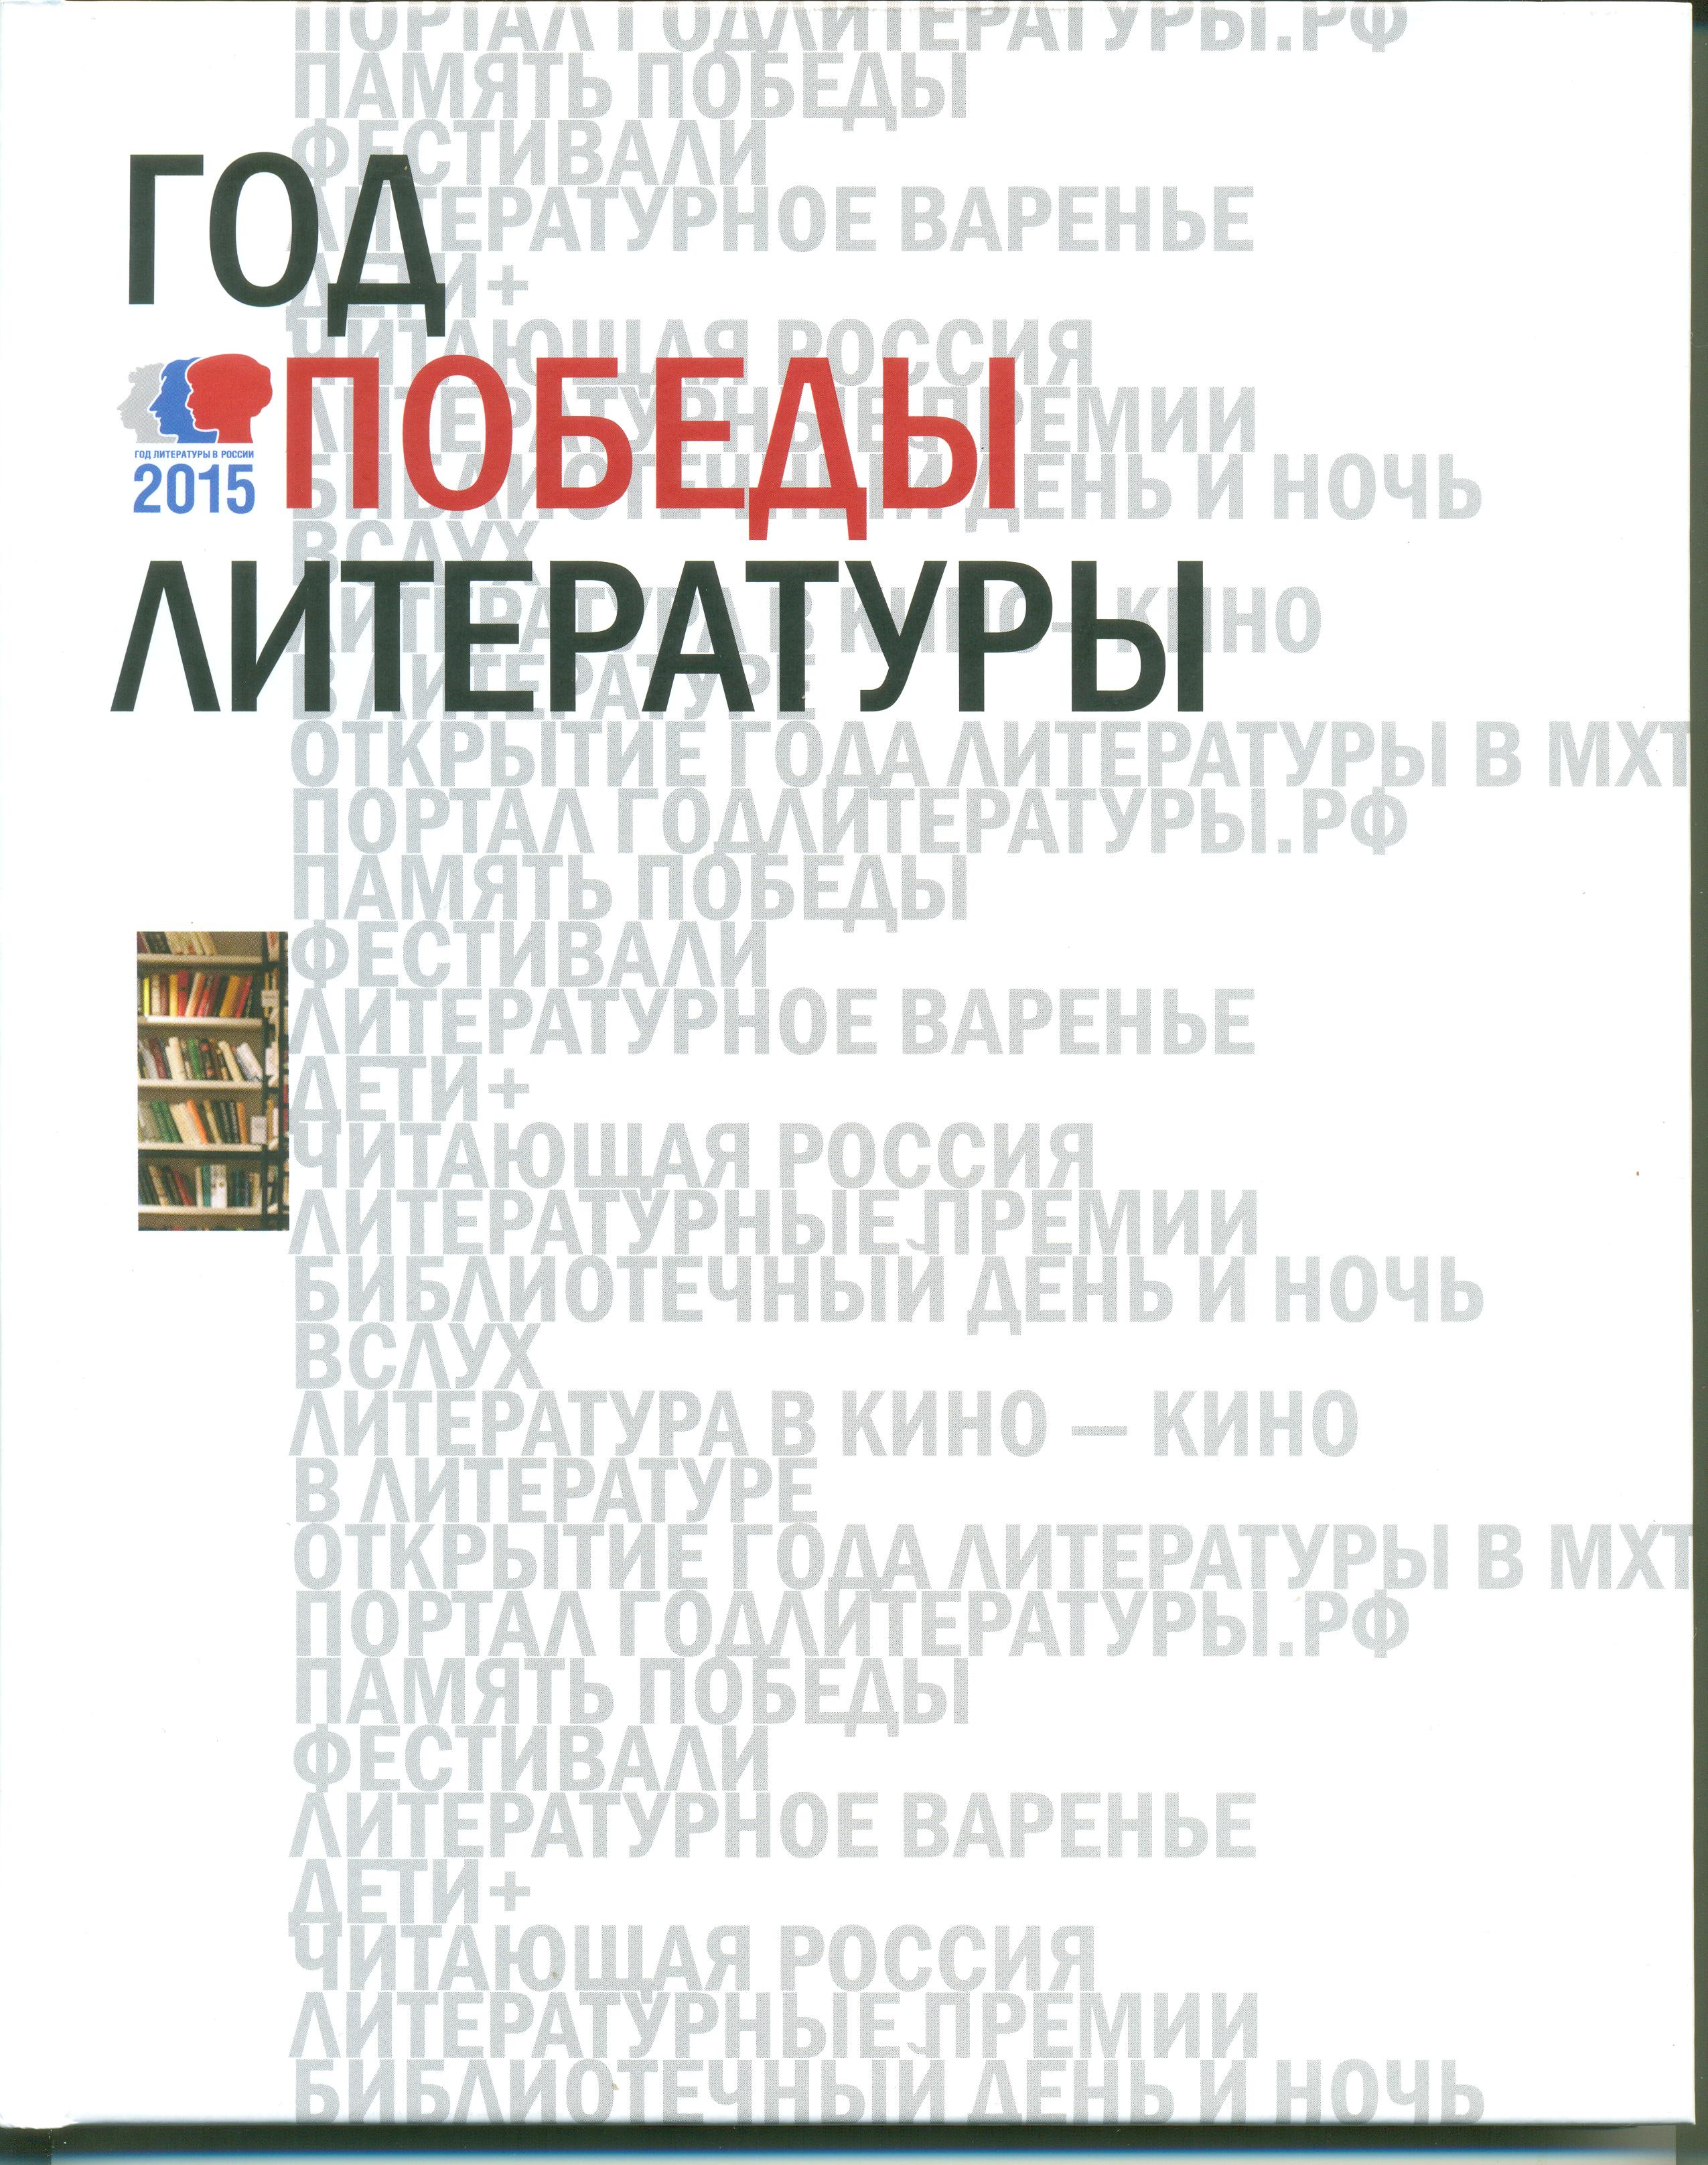 Обложка альтбома "ГОД ПОБЕДЫ ЛИТЕРАТУРЫ"